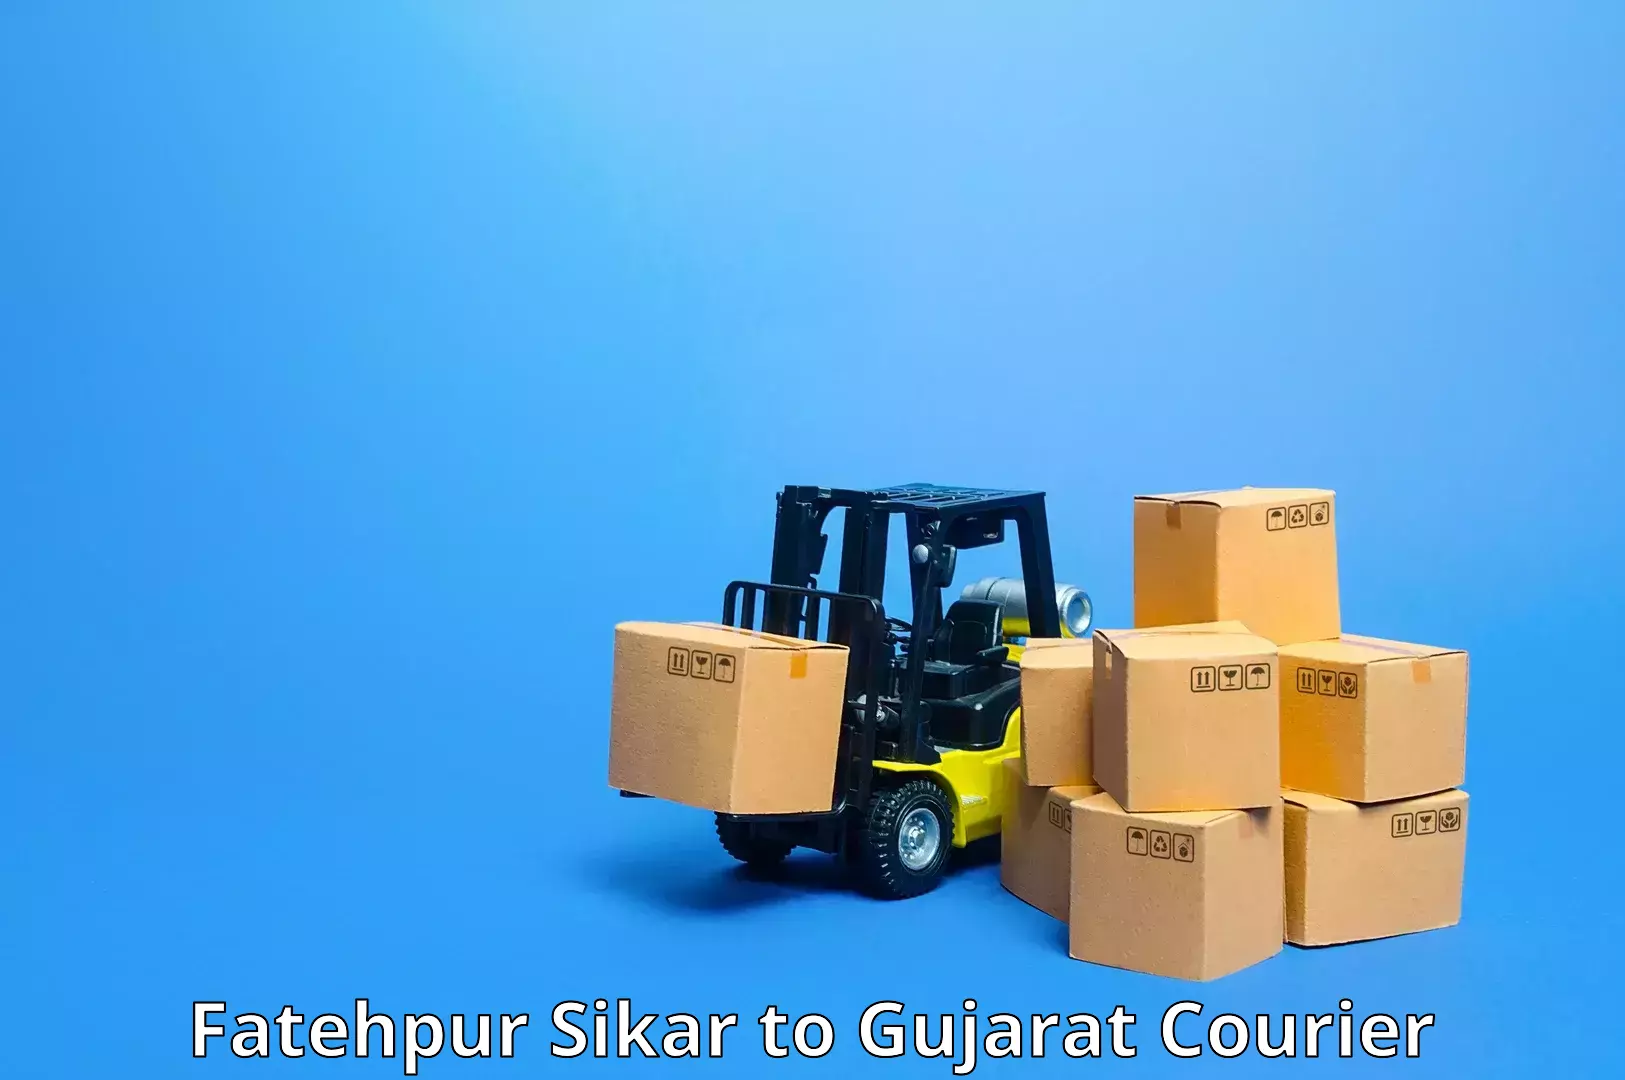 Advanced shipping network Fatehpur Sikar to Gujarat